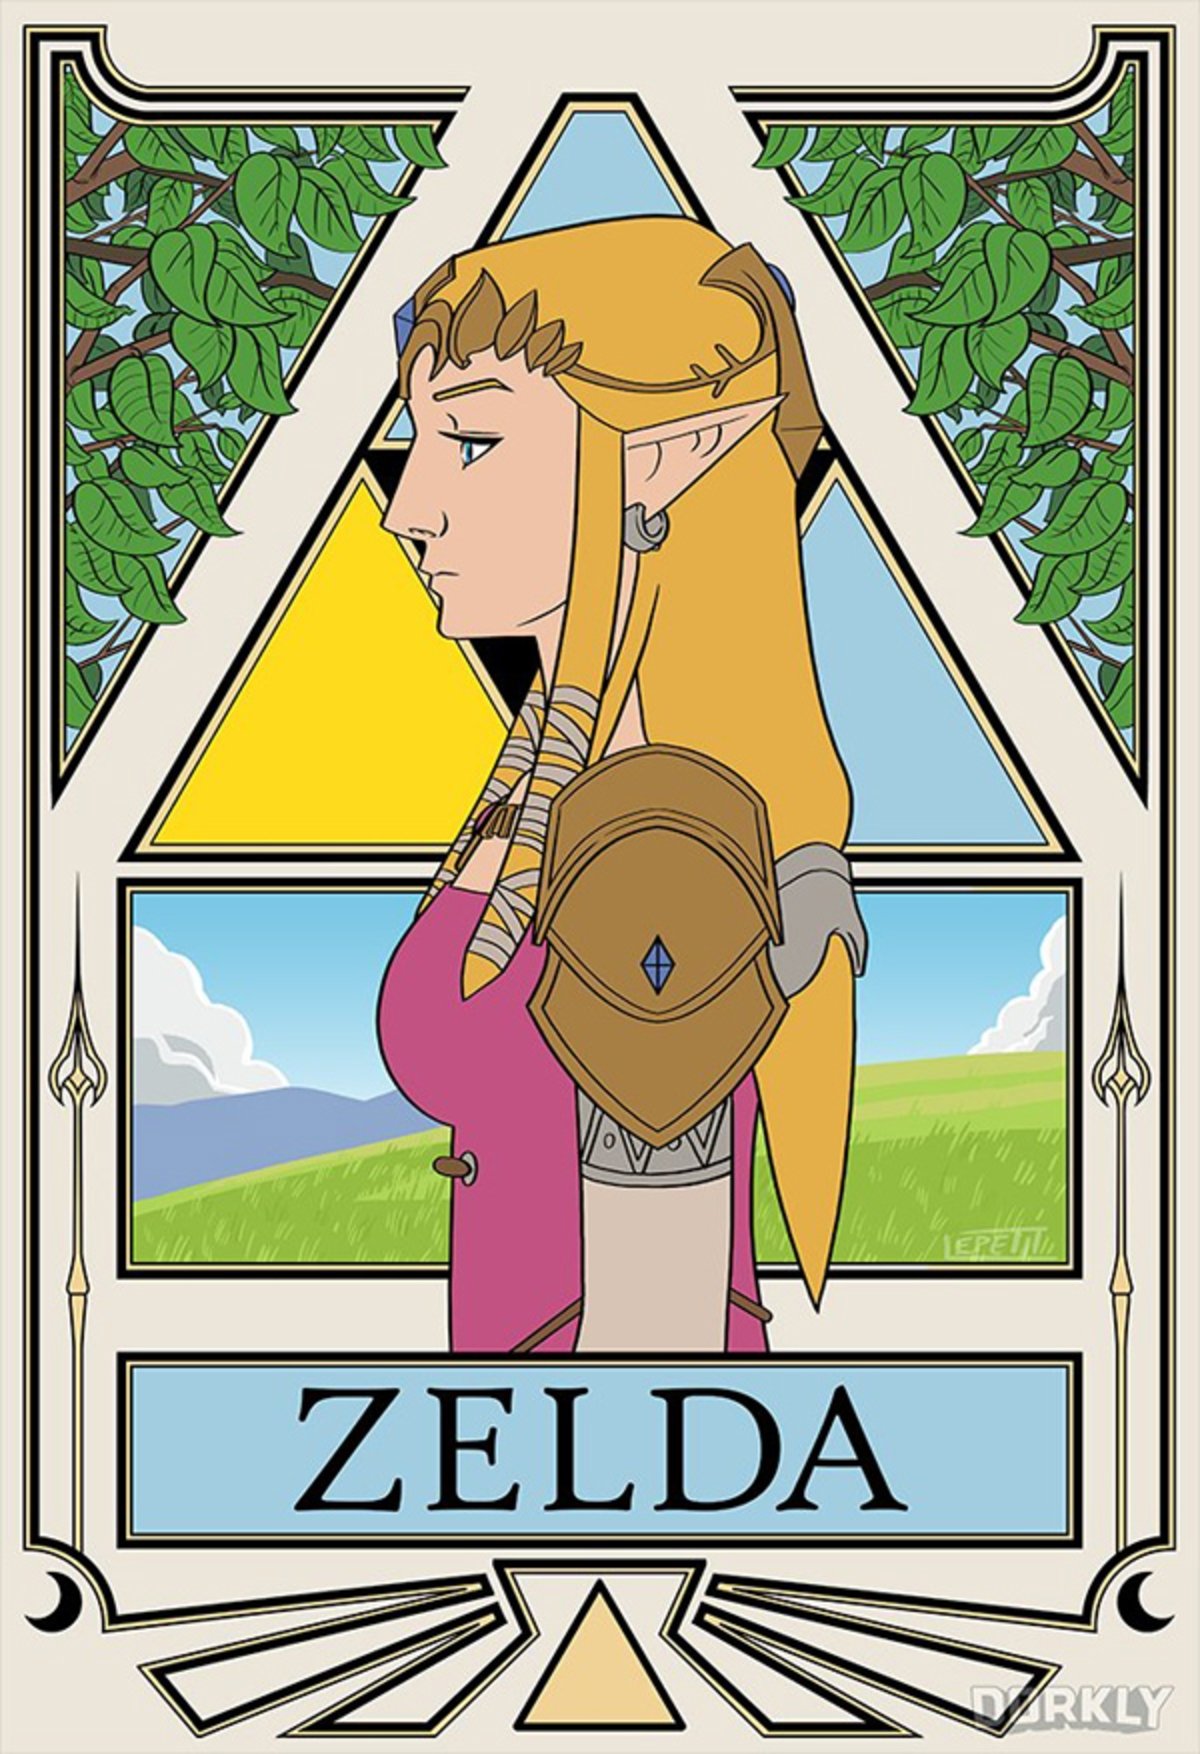 The Legend of Zelda: Descubre qué personaje eres según tu signo del Zodiaco